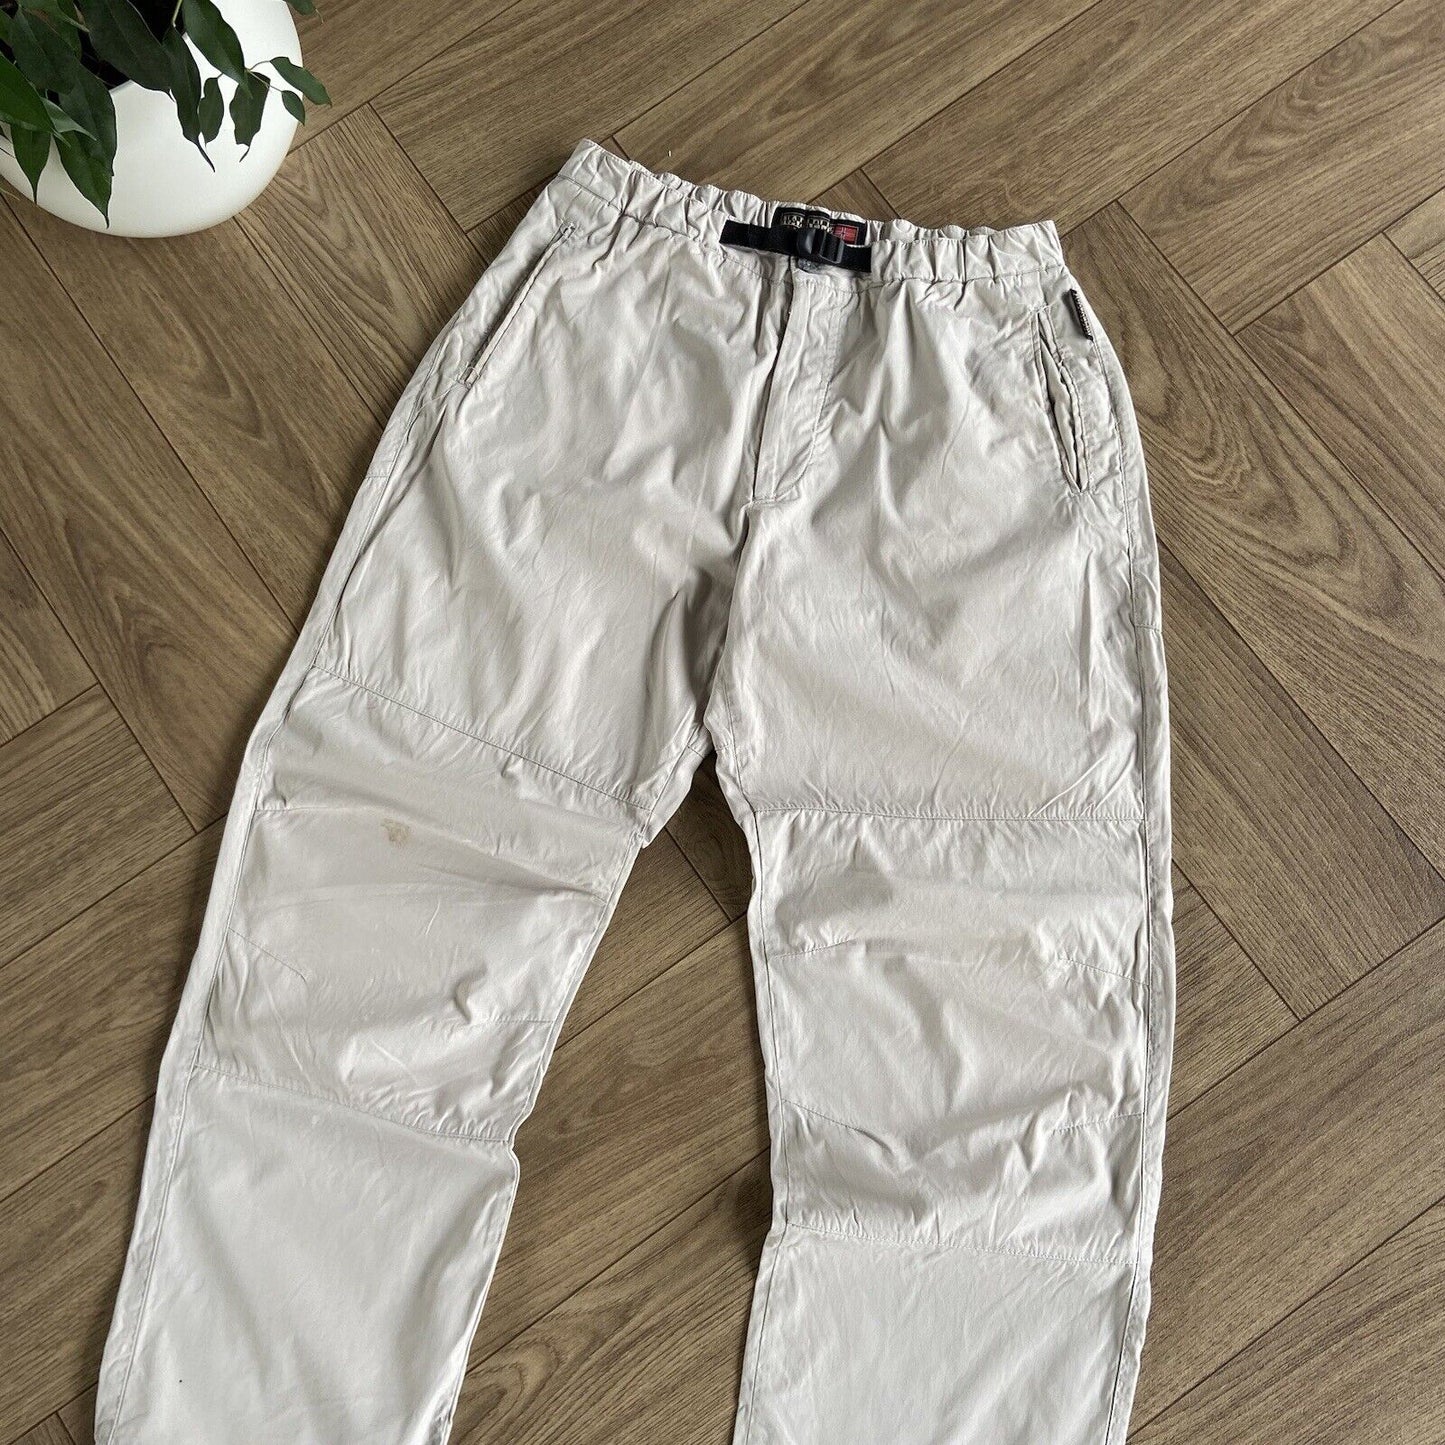 Napapijri Ripstop Trousers W32 L31.5 Hiking Walking Outdoor Beige